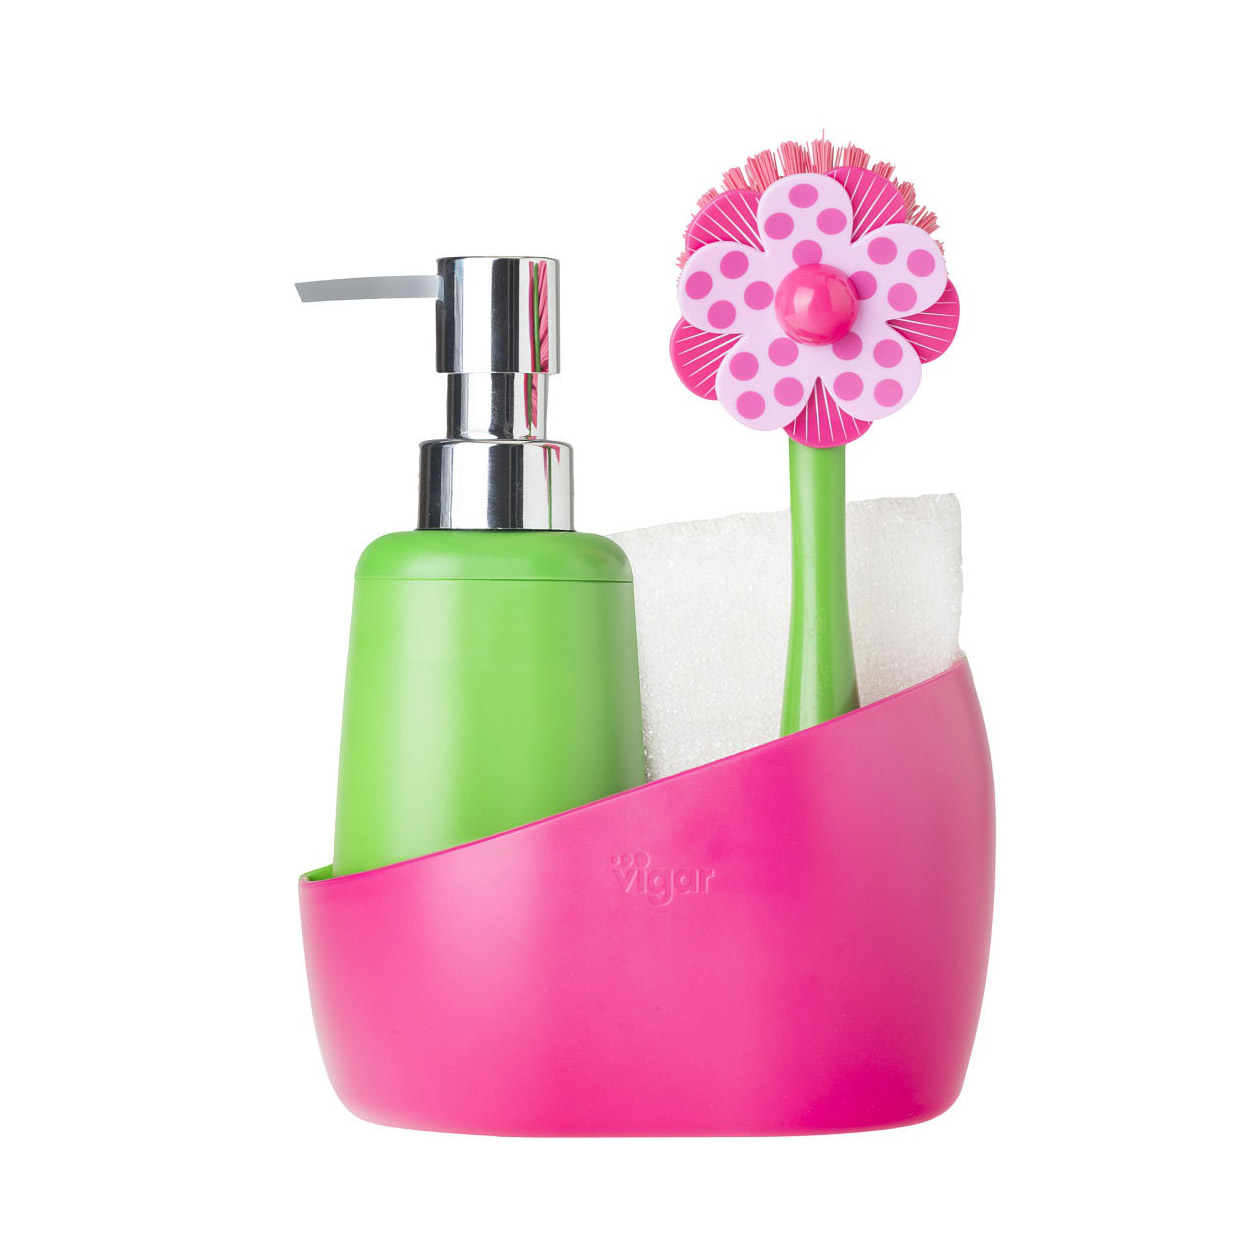 Набор для мытья посуды Vigar Lolaflor 4 предмета: дозатор, губка и щетка для мытья посуды на розовой подставке щетка для мытья и массажа животных с емкостью для шампуня розовая